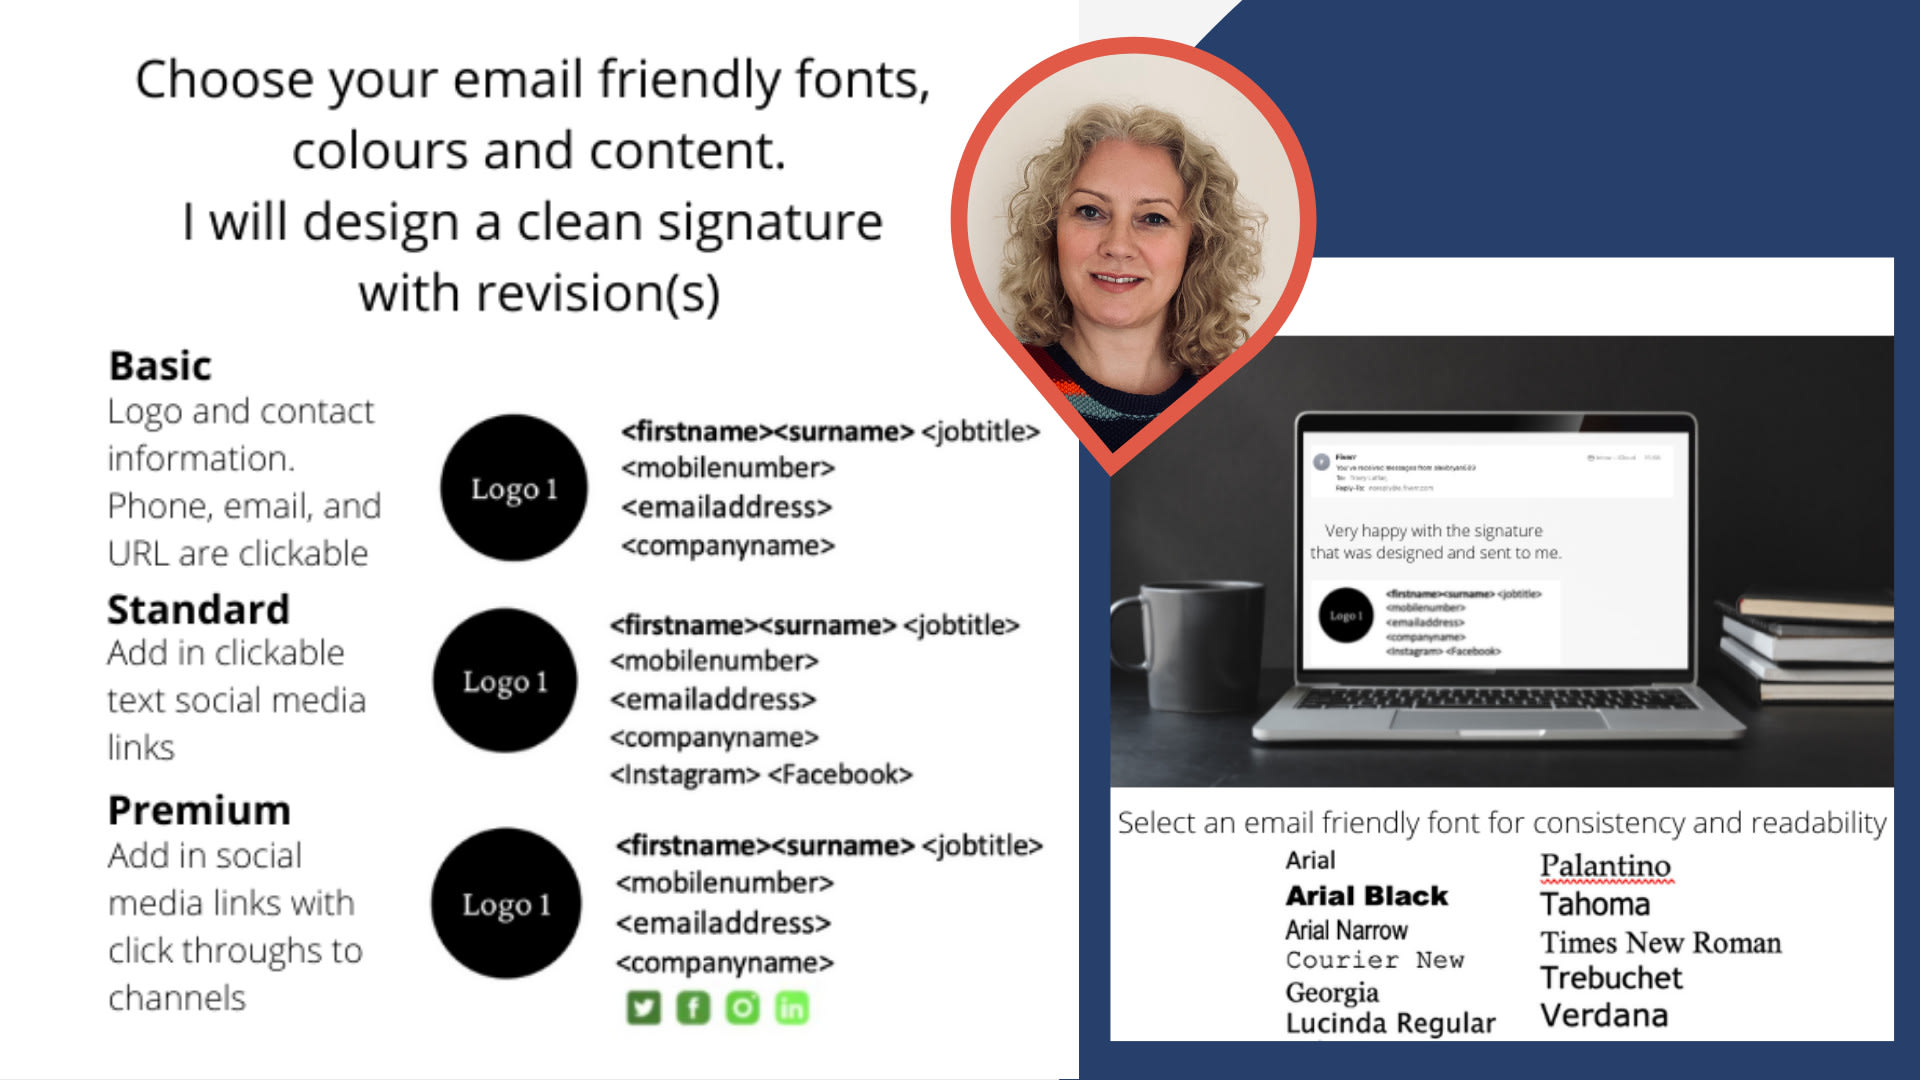 Email signature design: Một email signature sáng tạo và đẹp mắt sẽ giúp bạn tăng tính chuyên nghiệp và tạo ấn tượng với người đọc. Hãy để chúng tôi đồng hành cùng bạn để tạo ra một email signature đẹp mắt và ấn tượng. Với những lựa chọn đa dạng về màu sắc, kiểu chữ và hình ảnh, chắc chắn sẽ mang đến cho bạn những trải nghiệm và ấn tượng tuyệt vời.